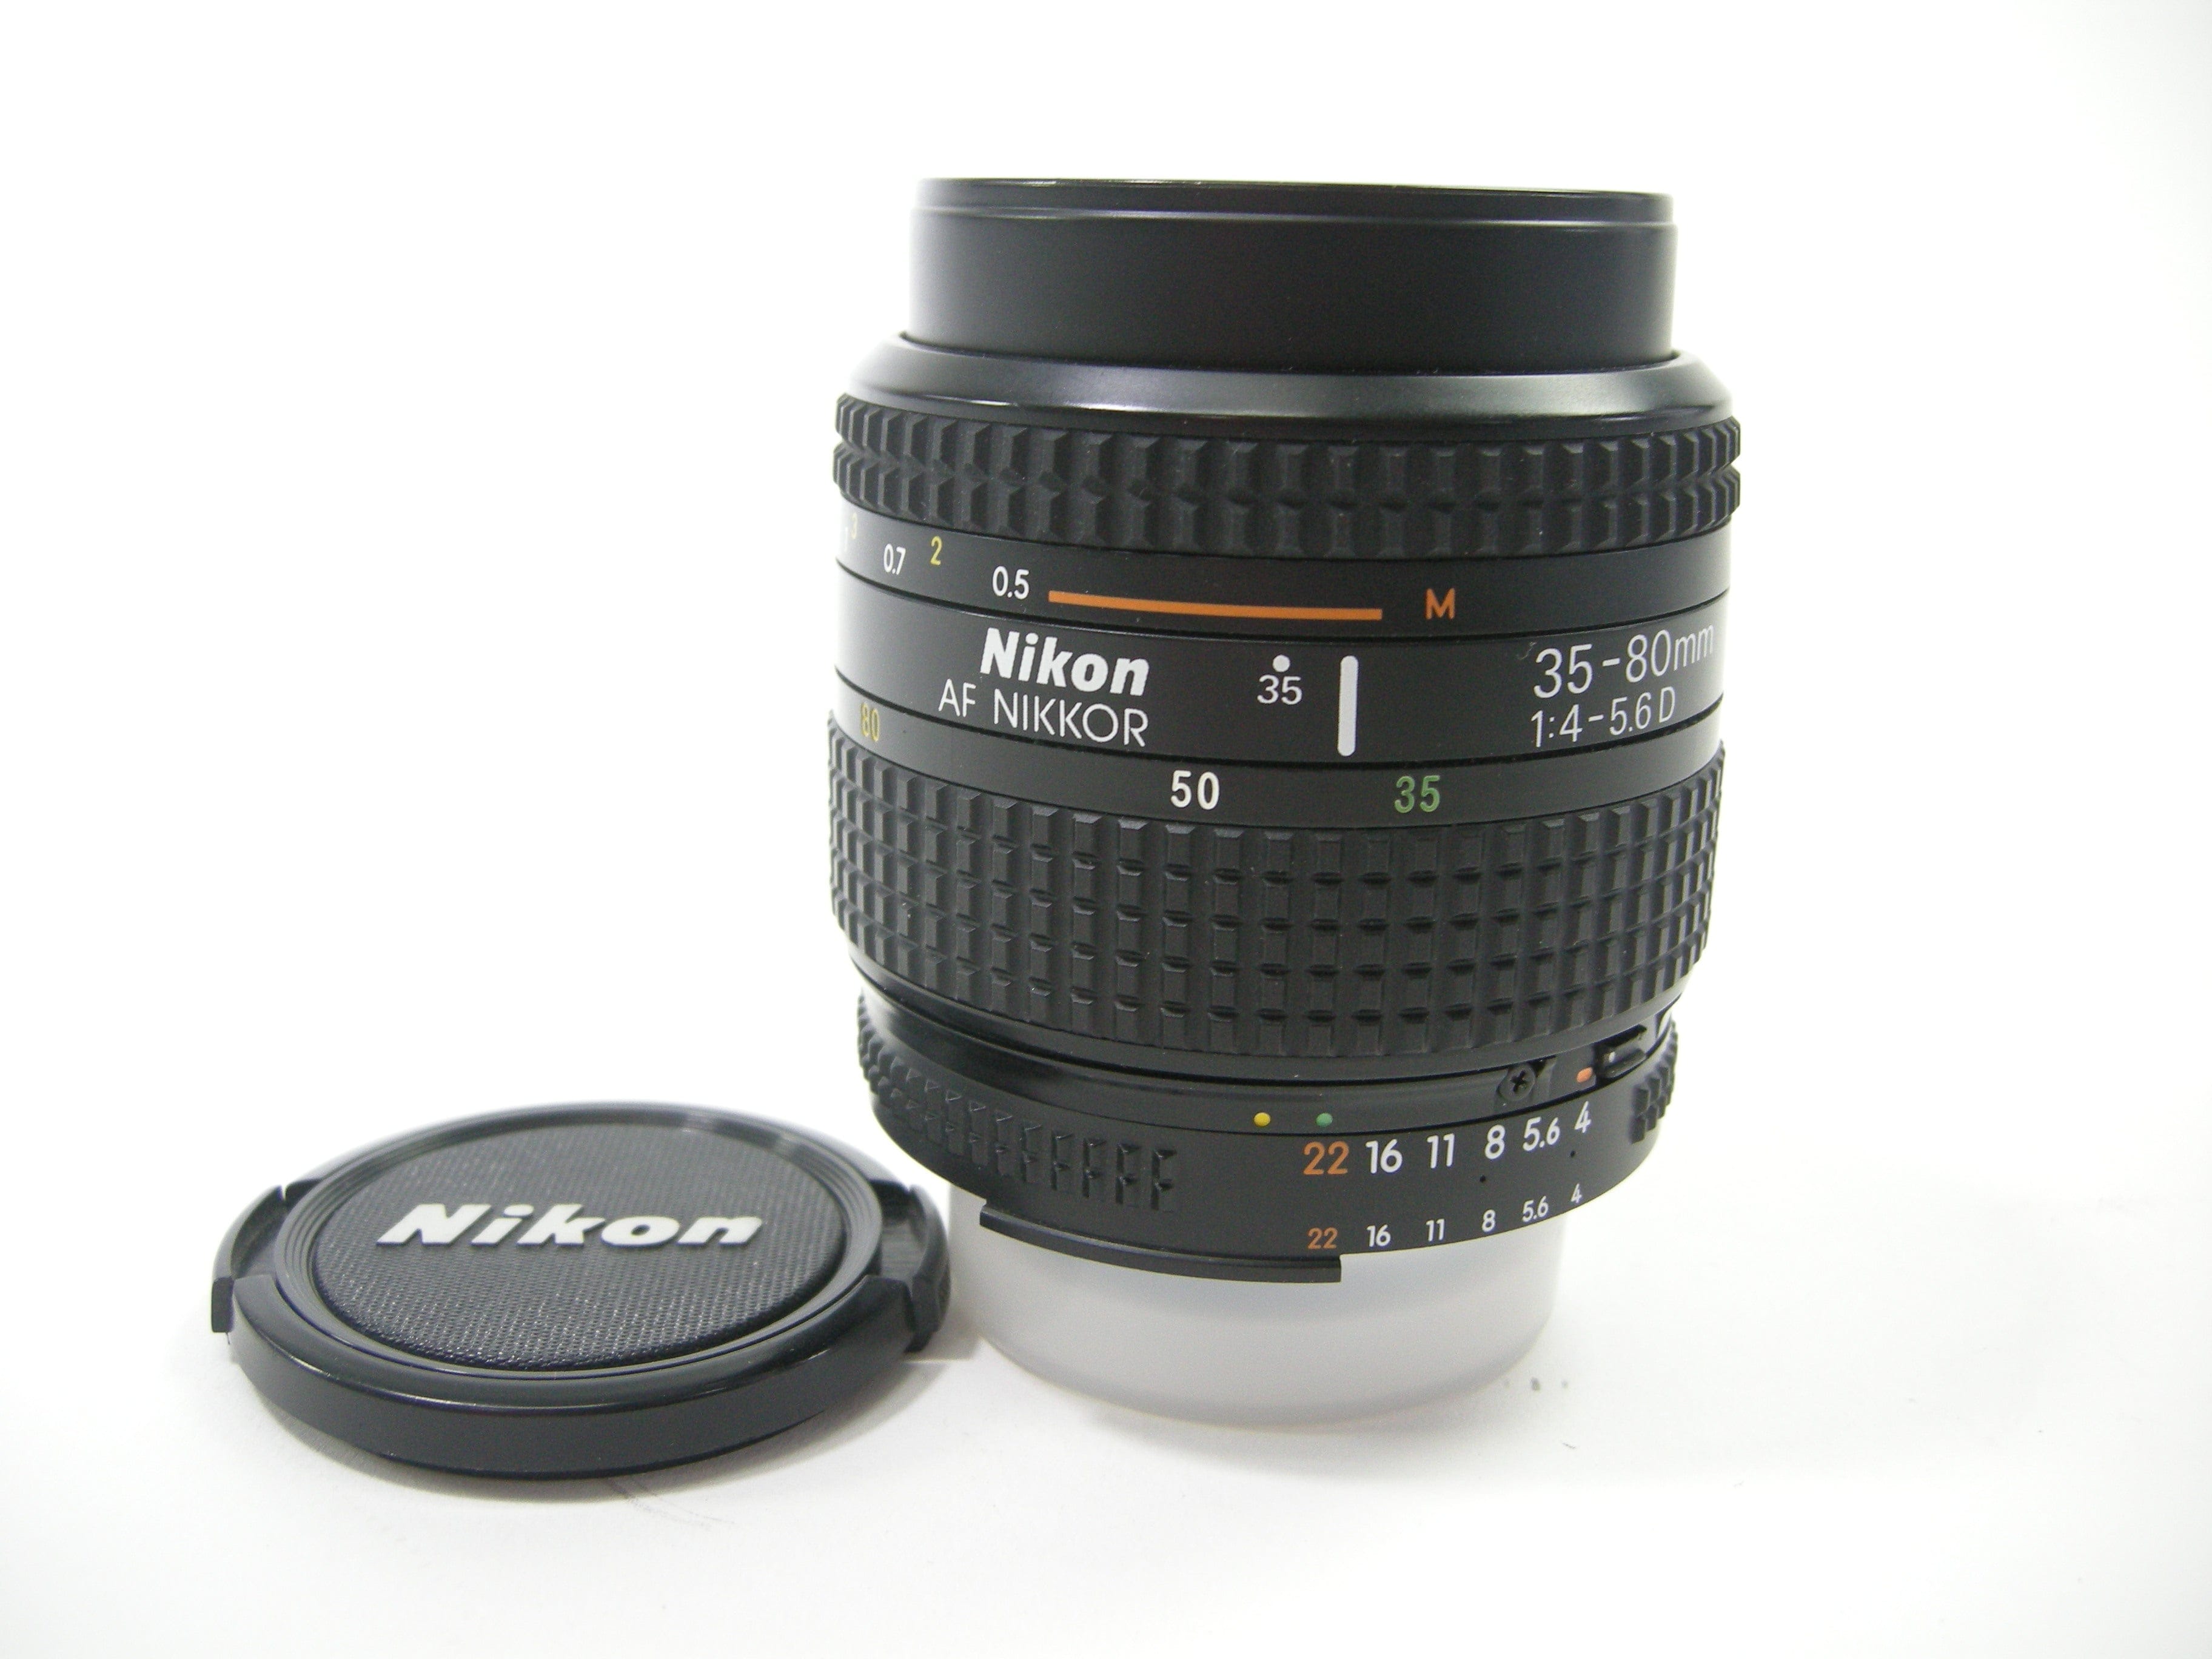 Nikon AF Nikkor 35-80mm f4-5.6D lens